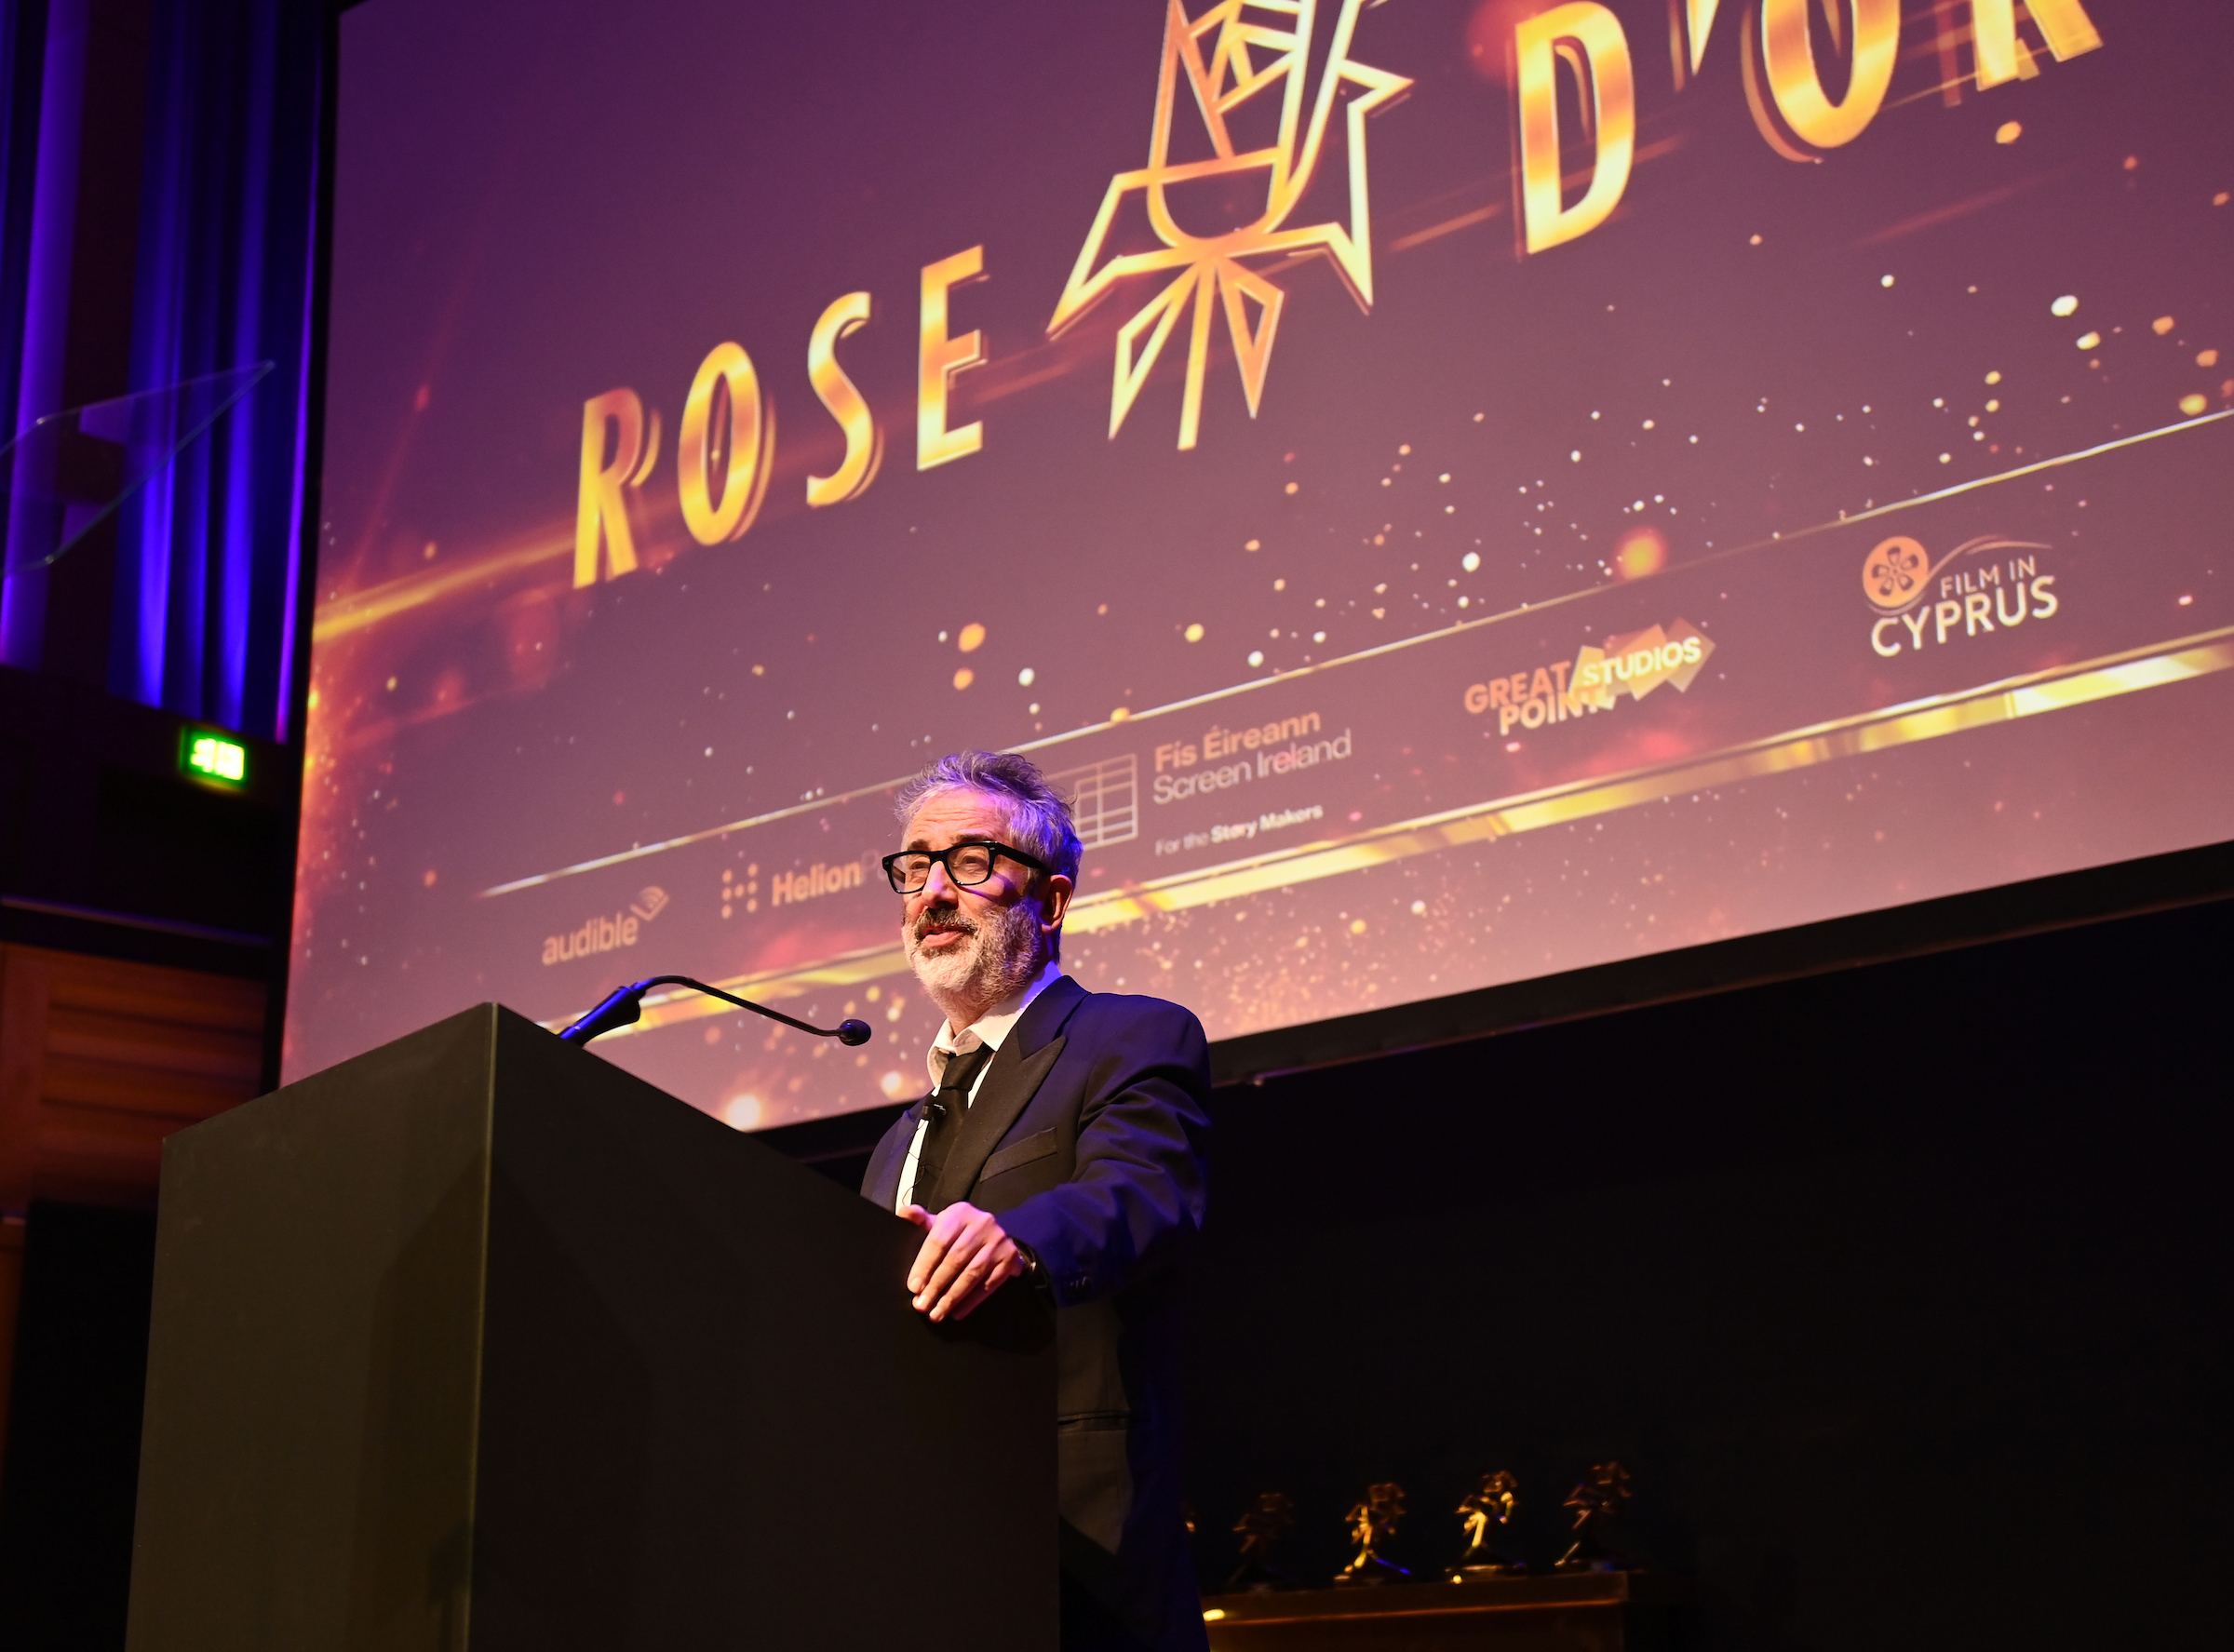 David hosting the Rose d'Or Awards